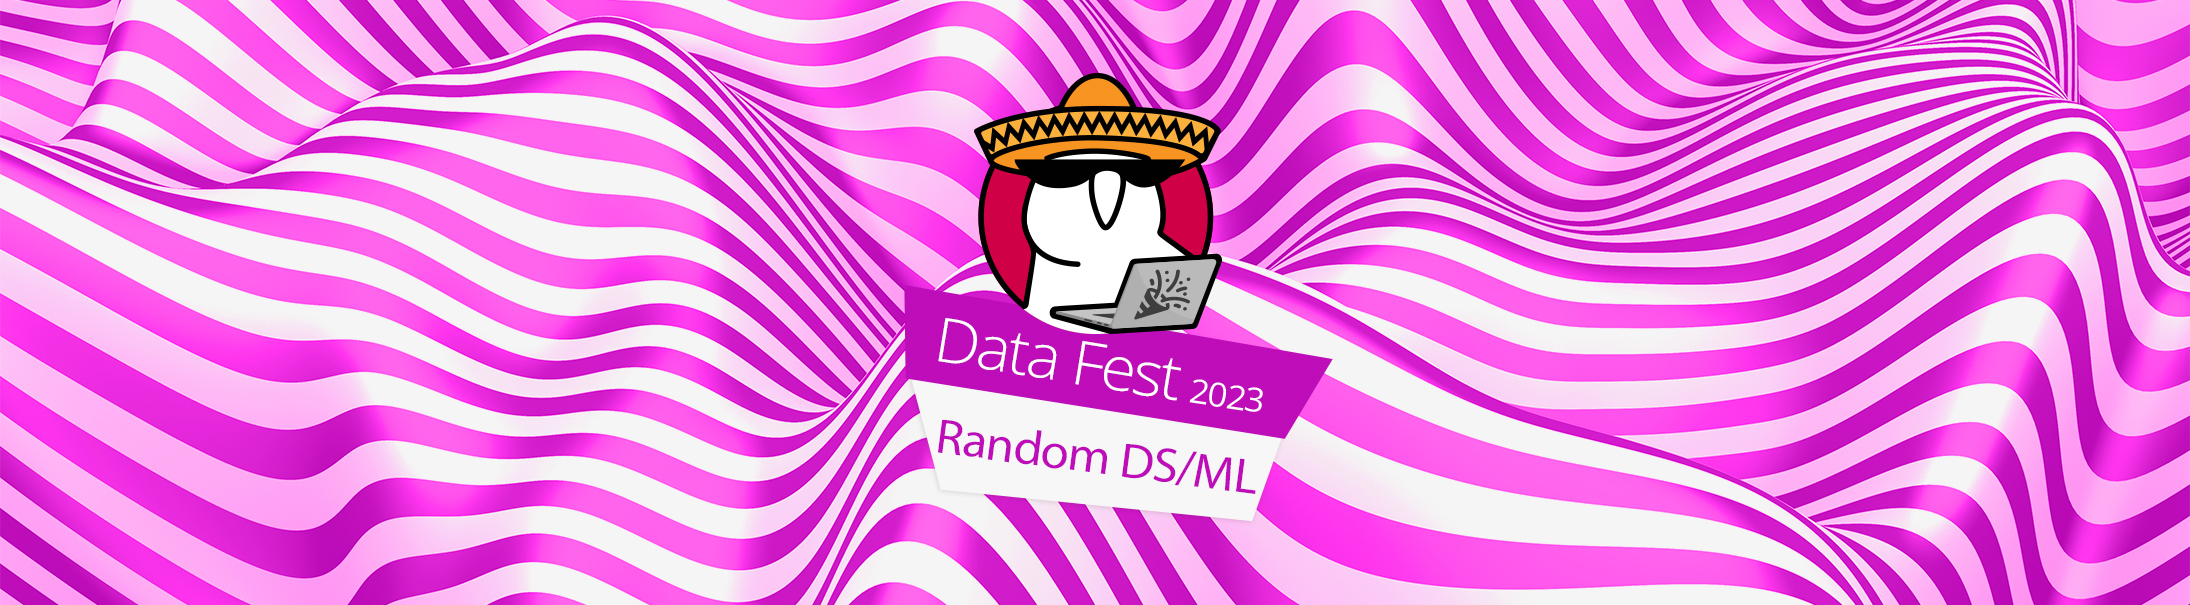 Random DS/ML (Data Fest 2023)